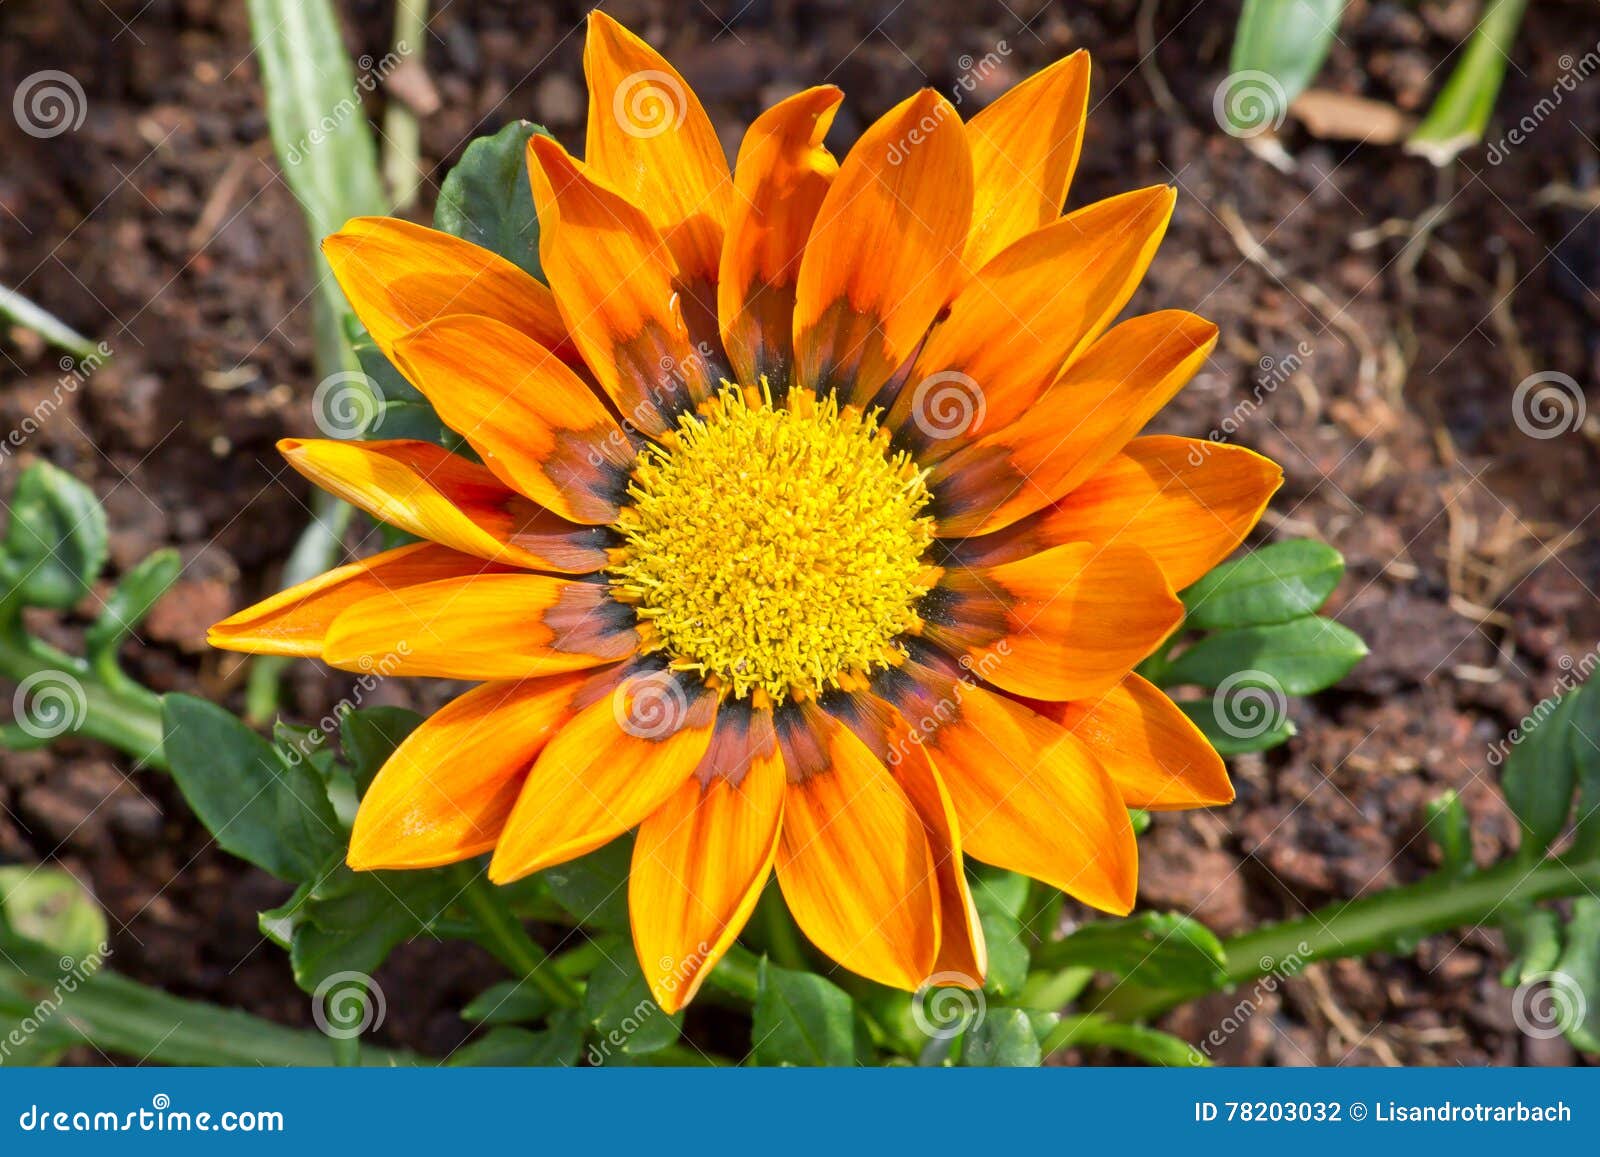 orange flower full of polen